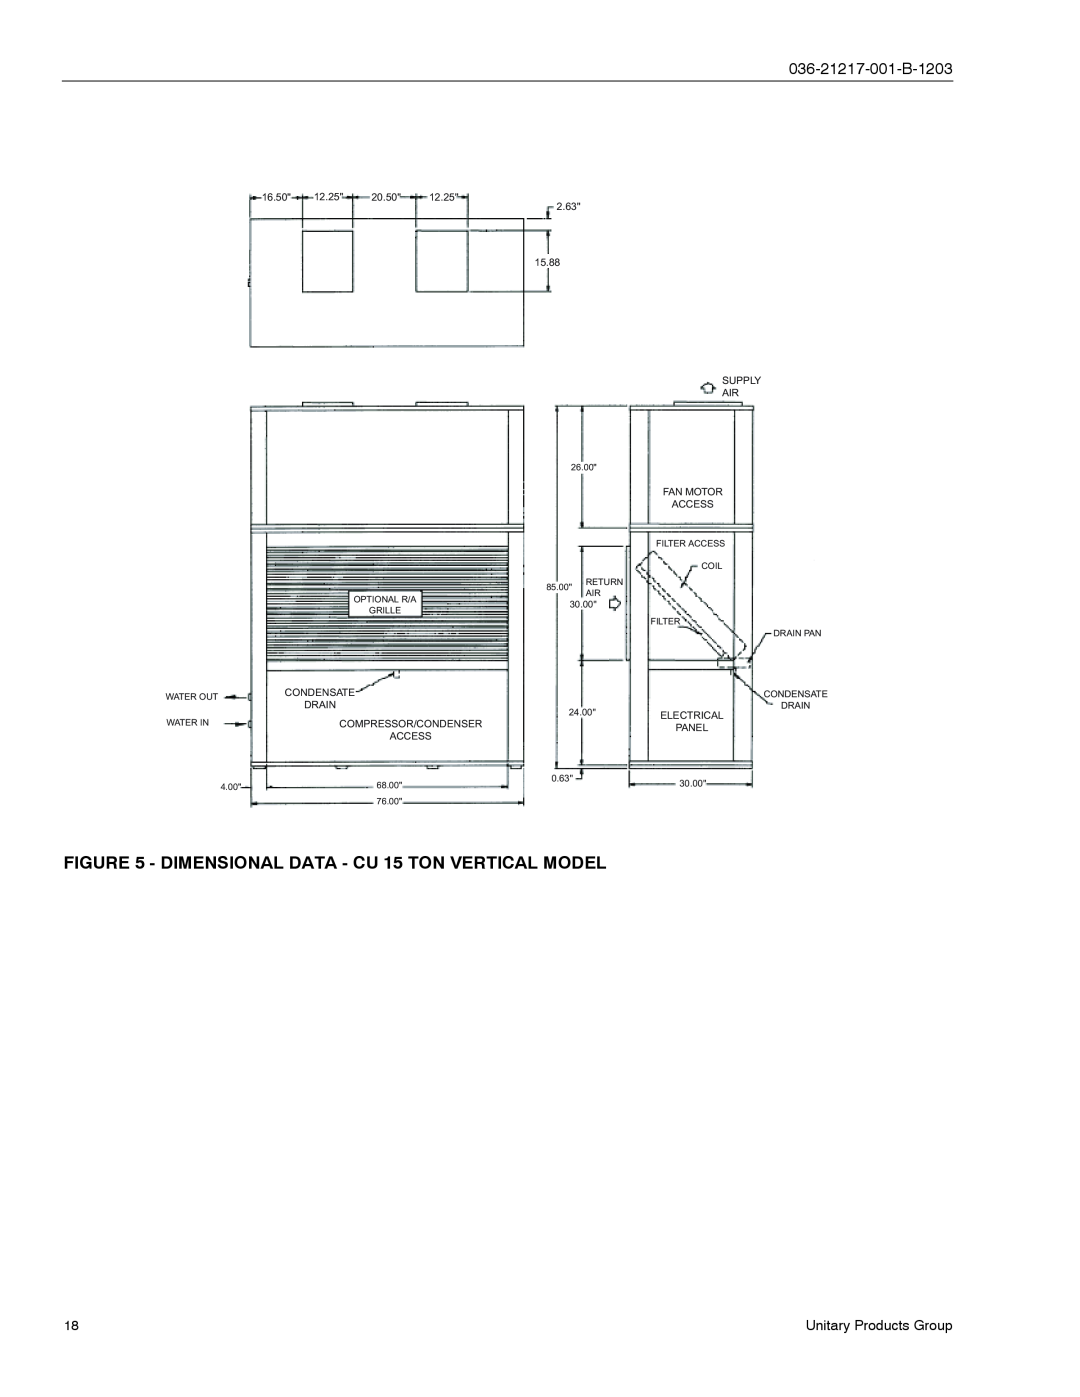 York CH060, CU060 manual 16.50 12.25 20.50 2.63 15.88, Supply, Drain, Compressor/Condenser, Electrical, Access 